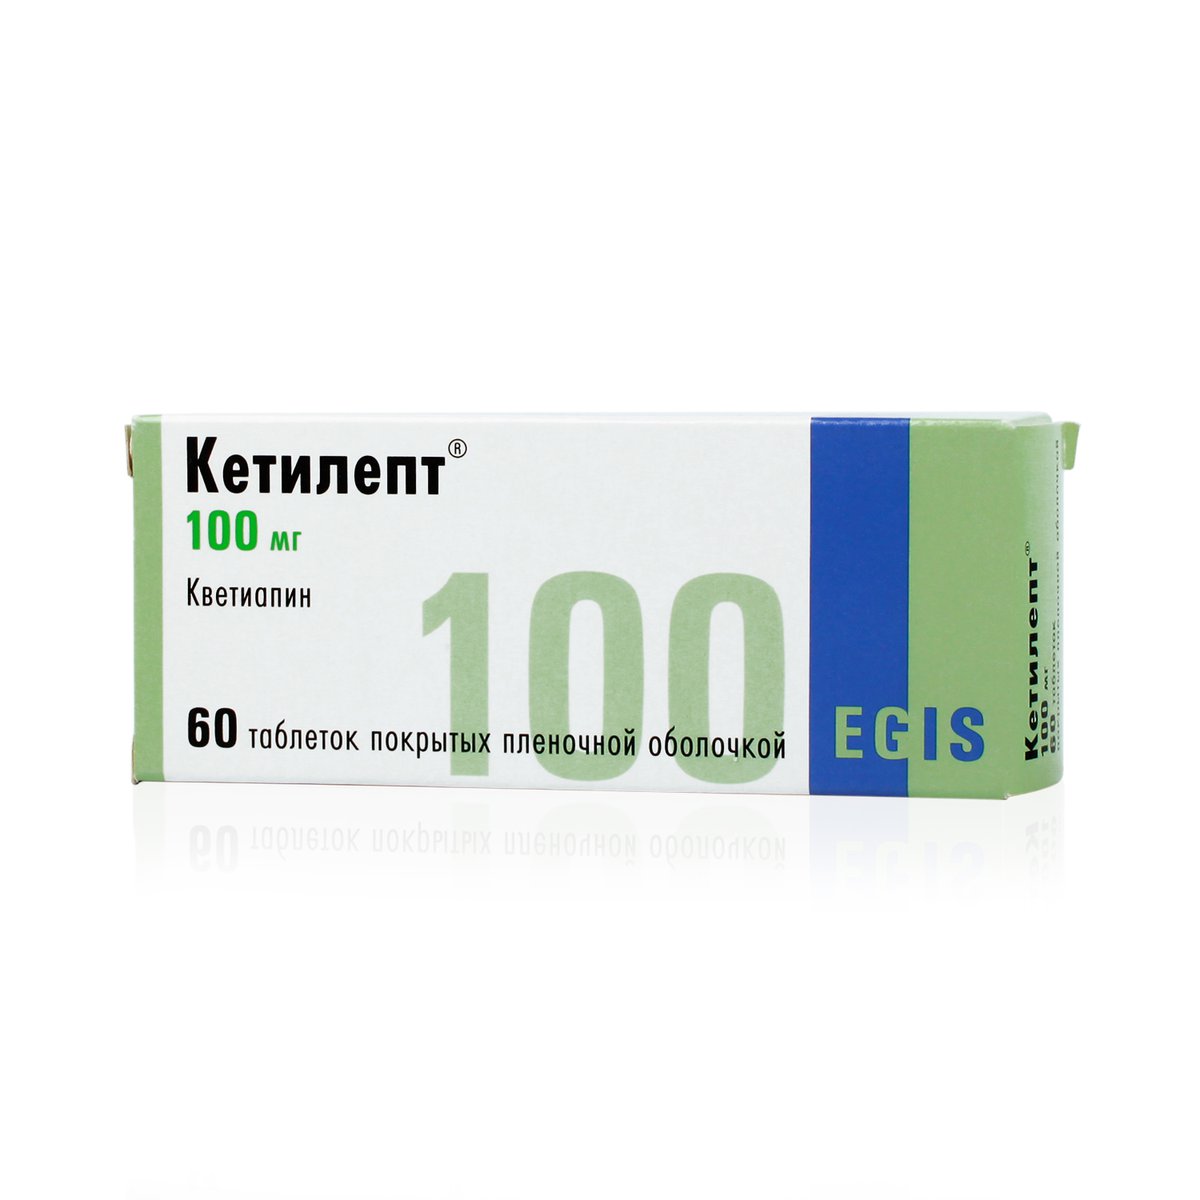 Кетилепт (таблетки, 60 шт, 100 мг) - цена,  онлайн  .